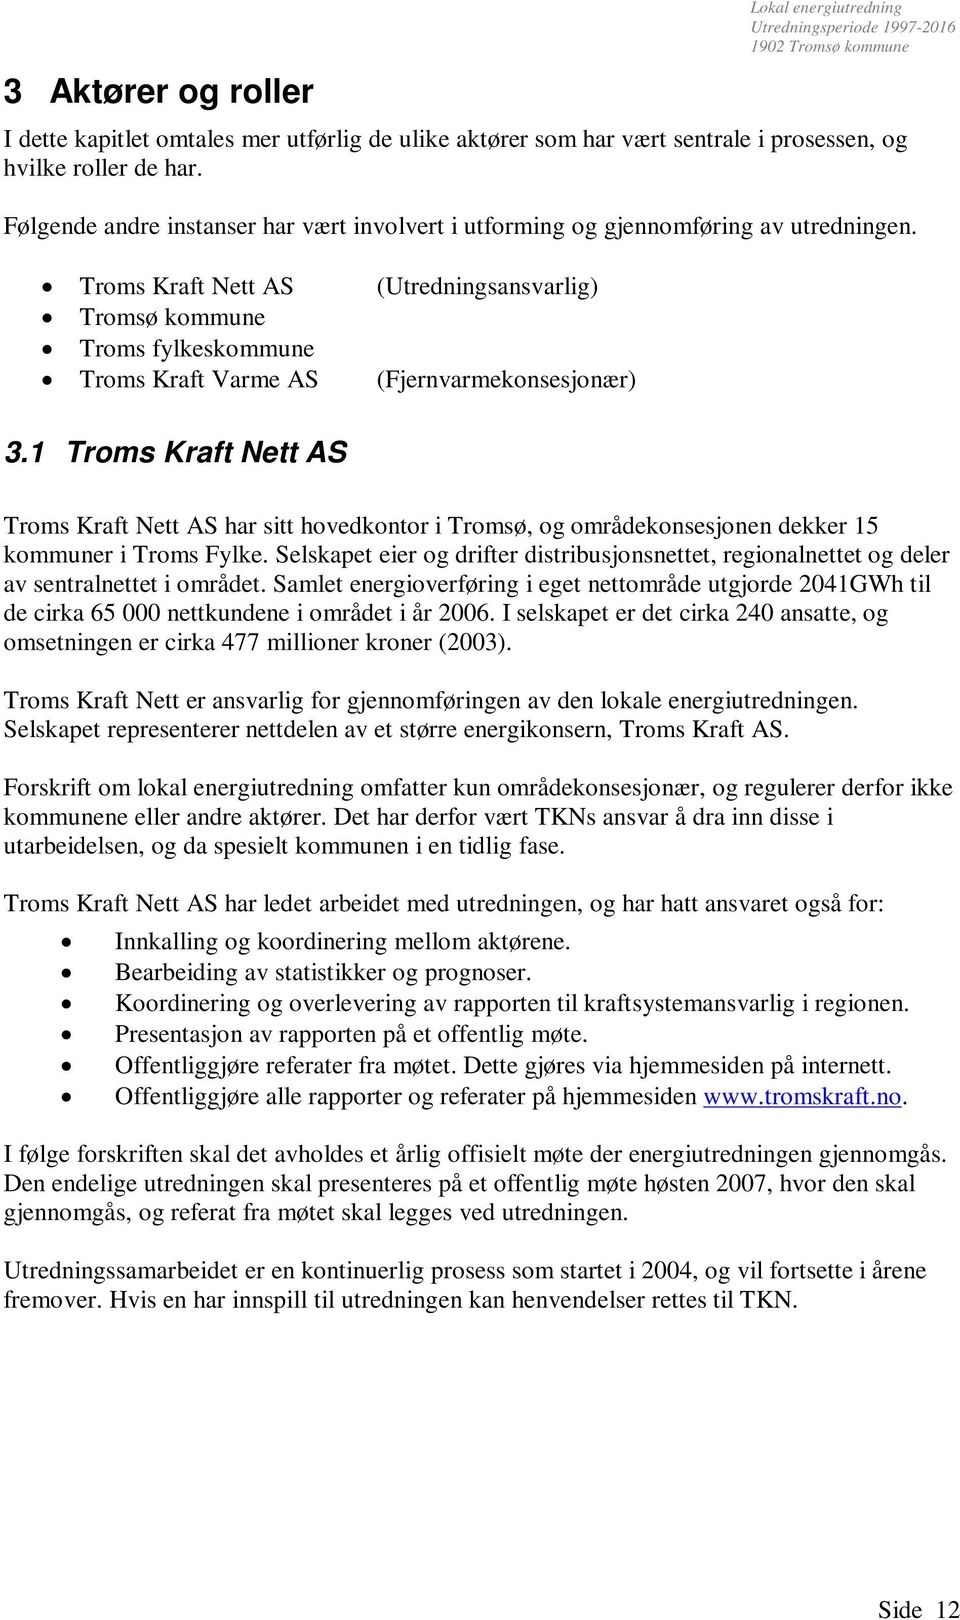 Troms Kraft Nett AS (Utredningsansvarlig) Tromsø kommune Troms fylkeskommune Troms Kraft Varme AS (Fjernvarmekonsesjonær) 3.